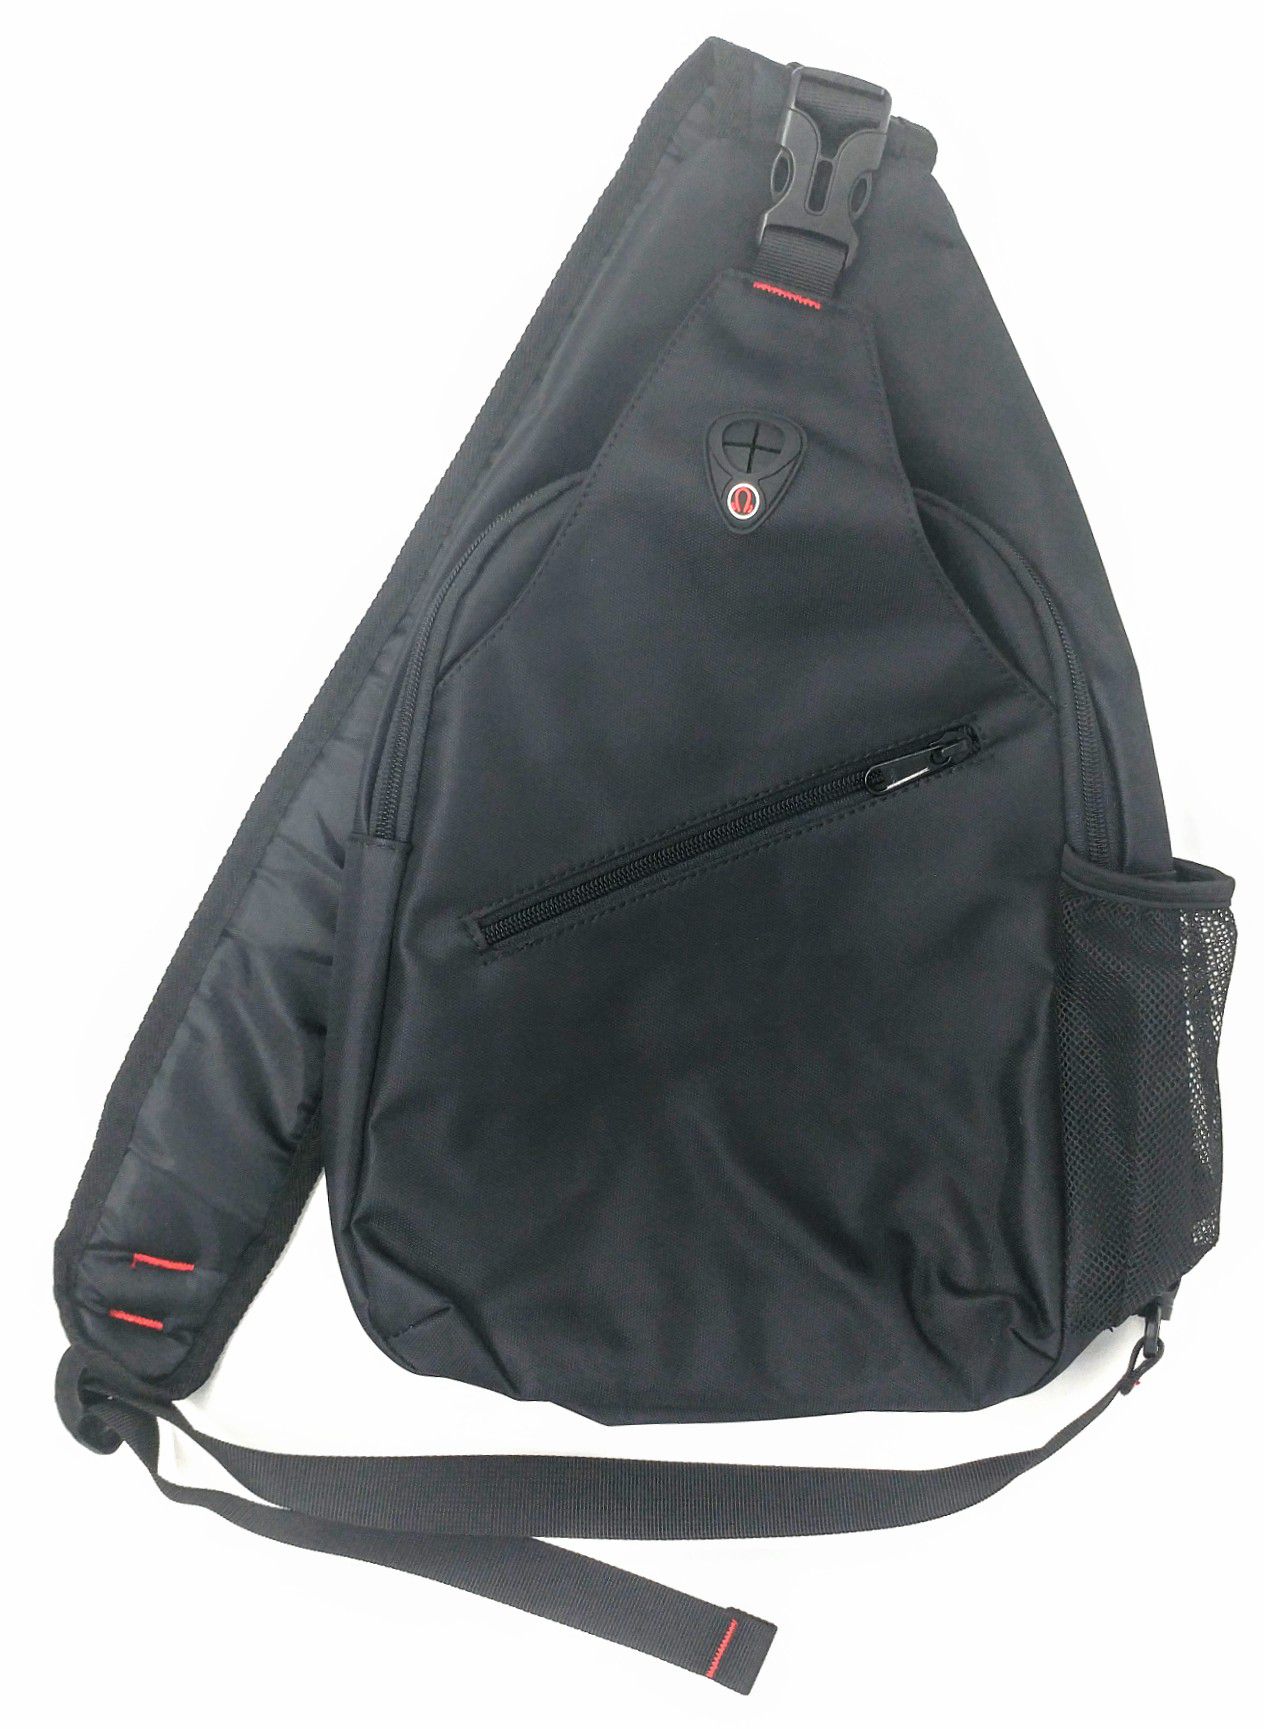 NEW Sling Travel Backpack, Crossbody Shoulder Bag Hiking Daypack